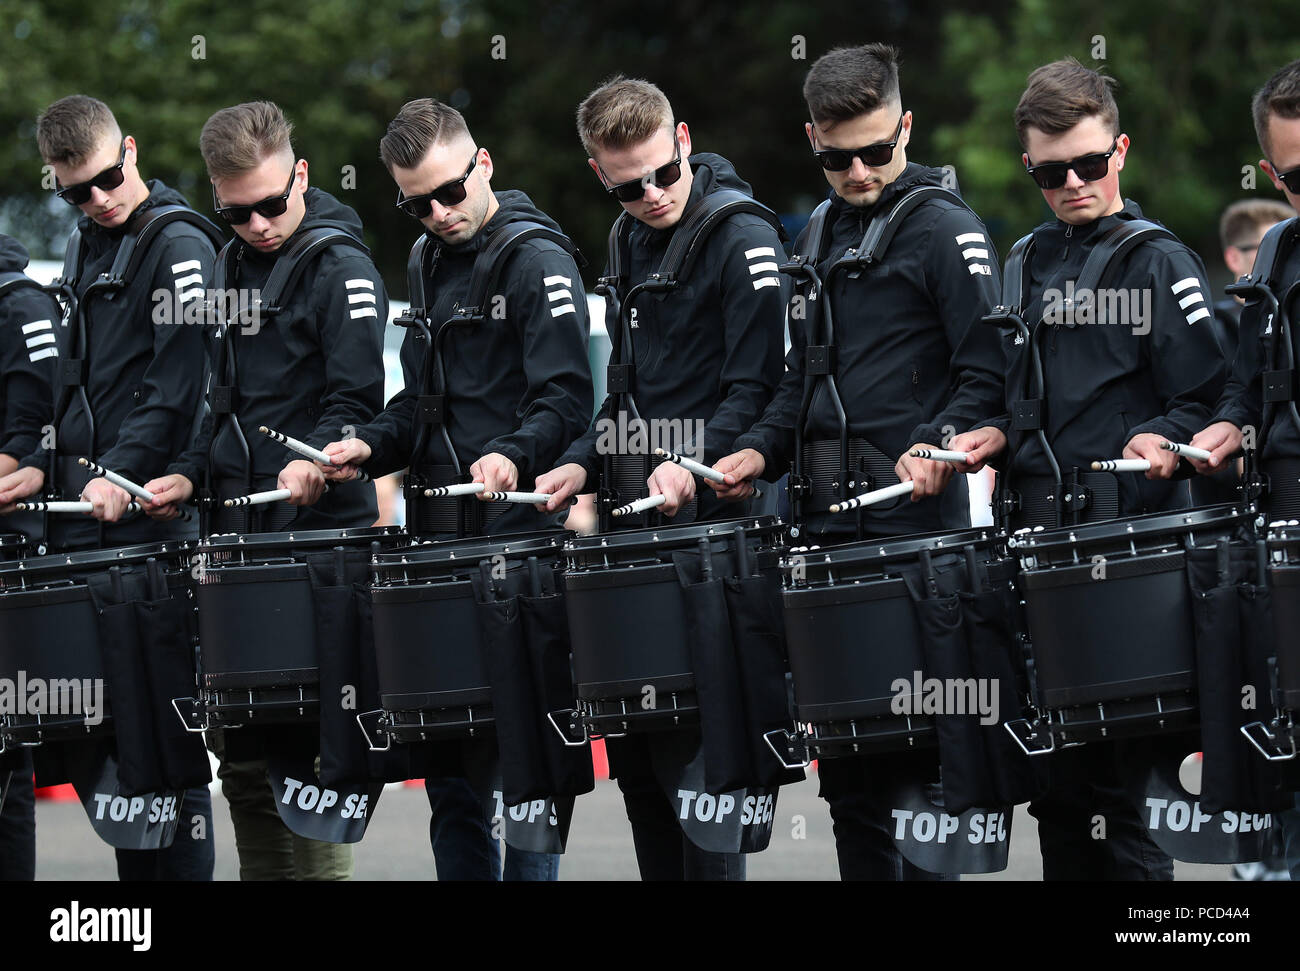 Le Top Secret Drum Corps à partir de la Suisse pendant la répétition pour la Royal Military Tattoo d'Edimbourg à Redford Barracks, Édimbourg. Banque D'Images